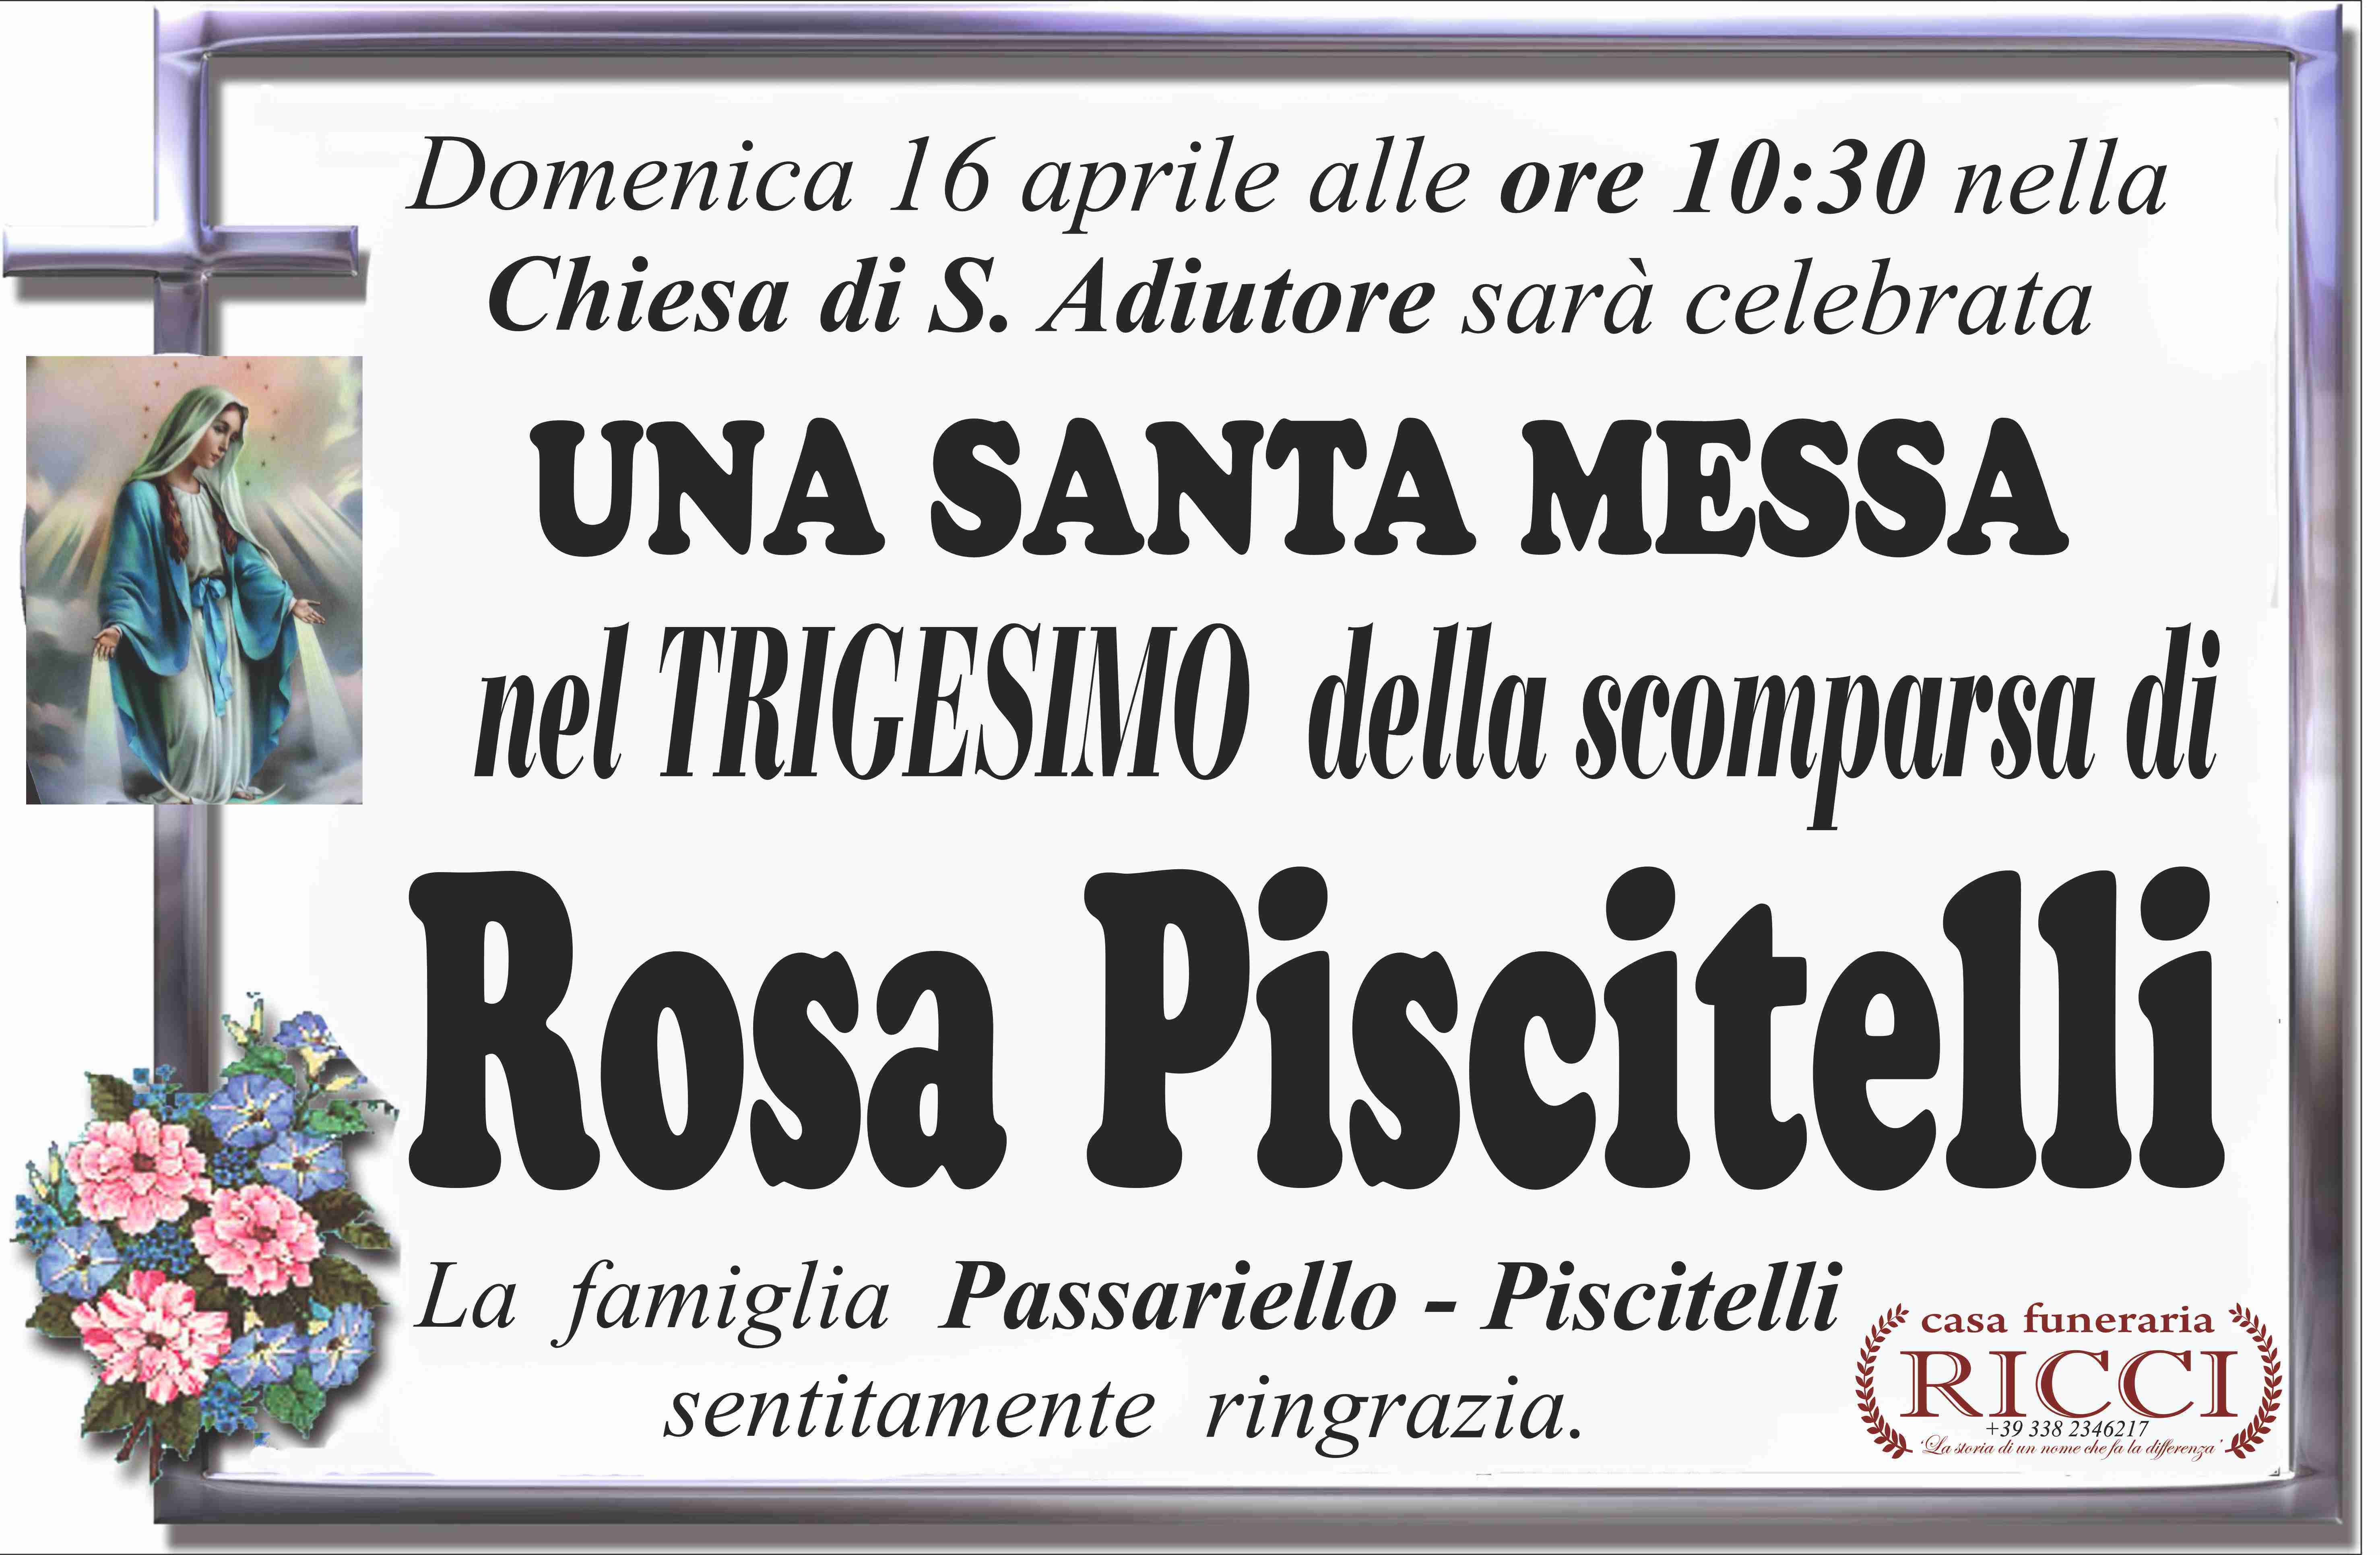 Rosa Piscitelli